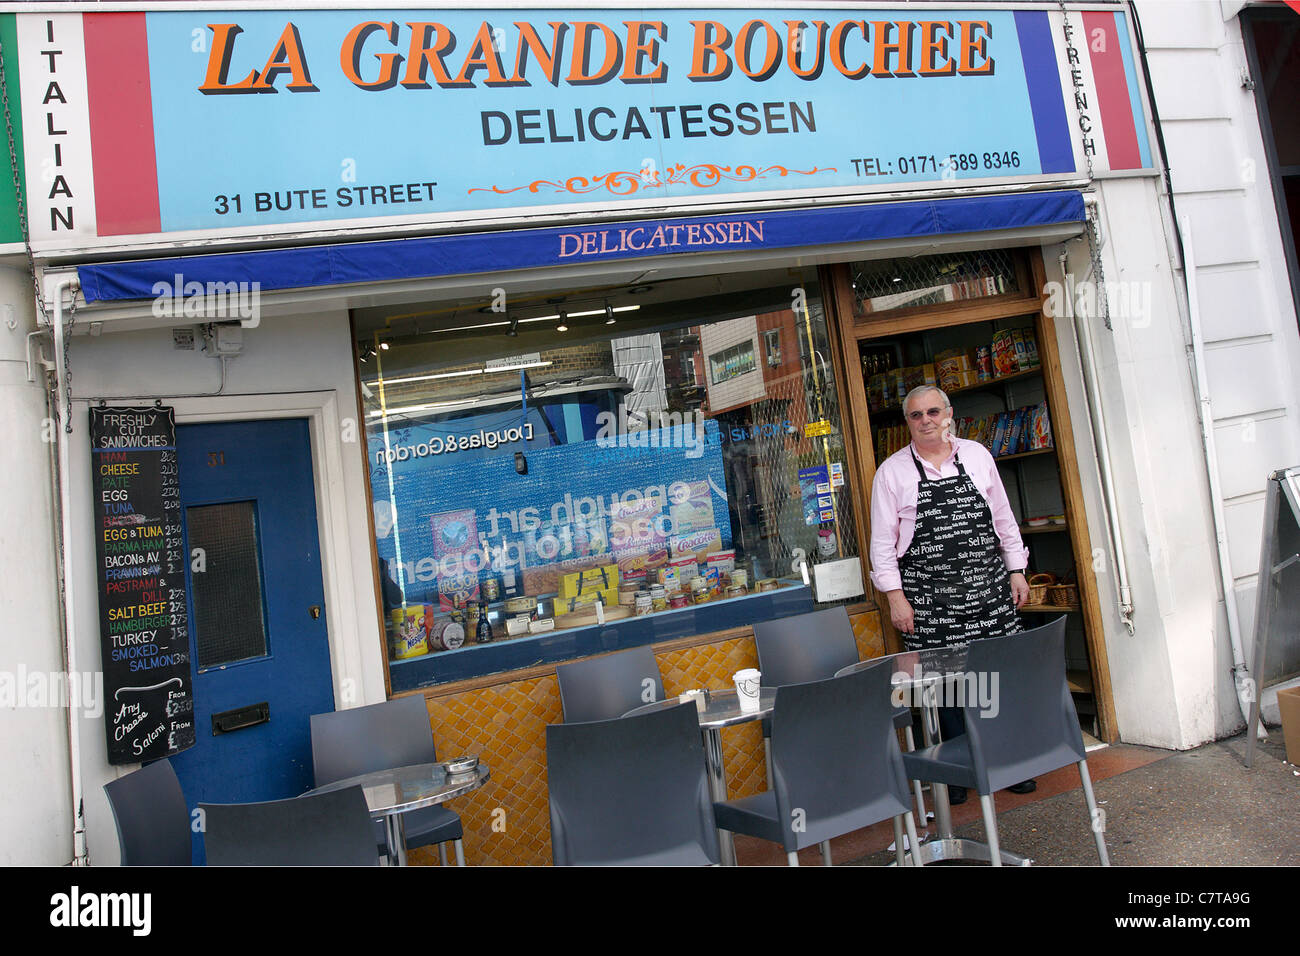 La Grande Bouchee, befindet sich im französischen Viertel von London befindet sich in South Kensington in der Nähe Lycee Francais Schule. Stockfoto